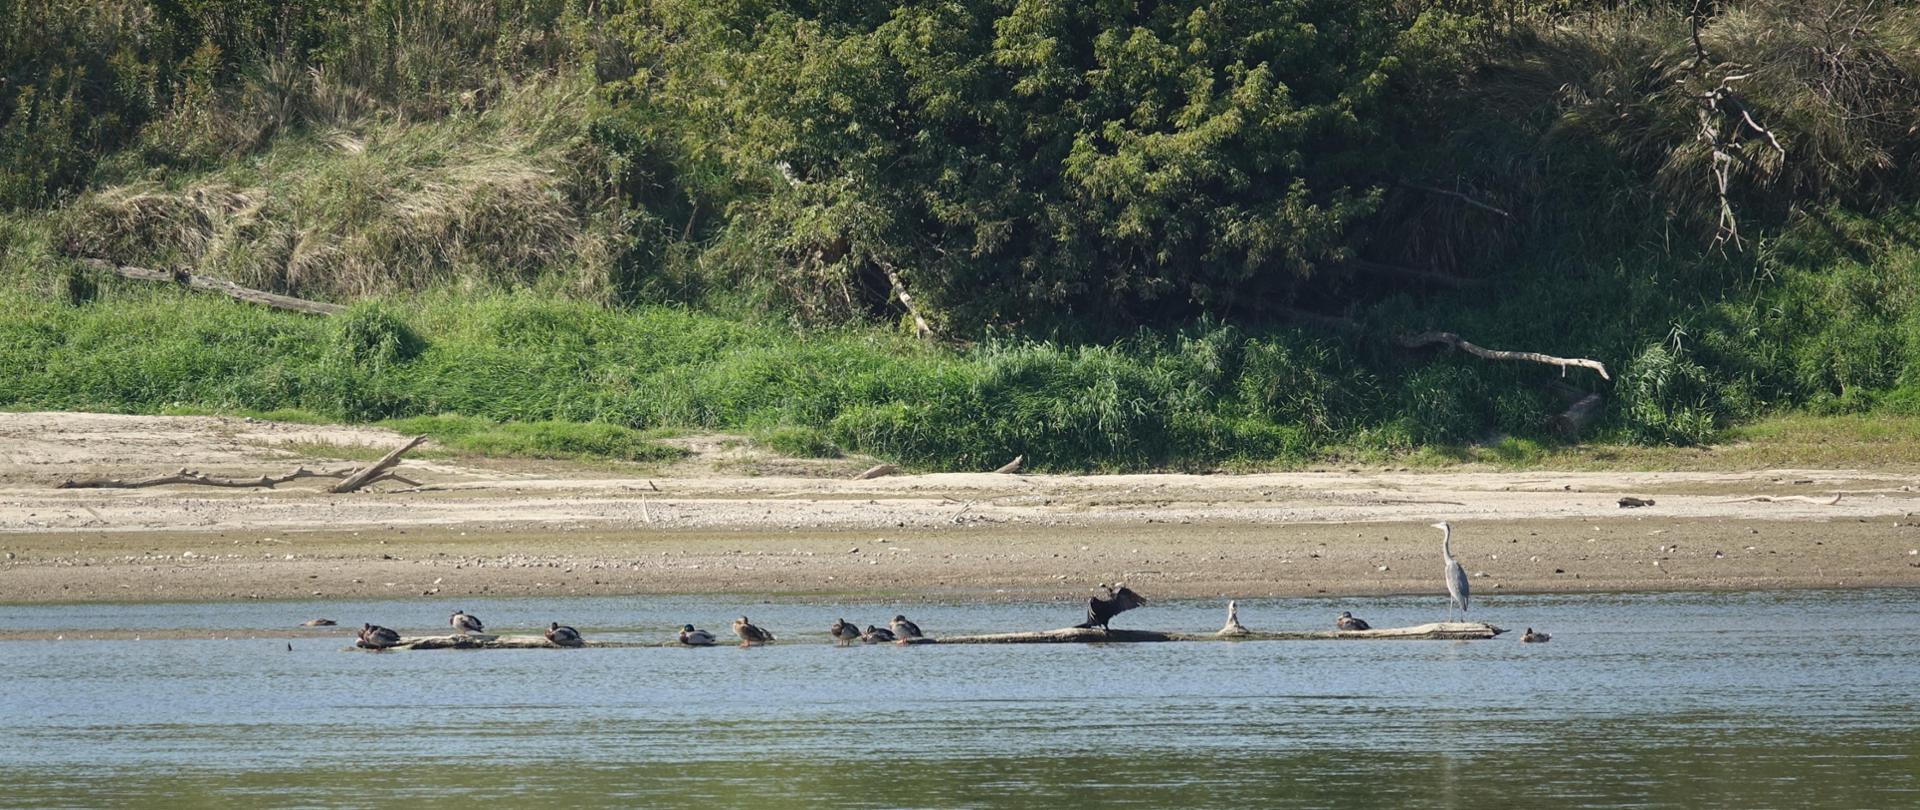 Na kłodzie drewna w rzece siedzą ptaki (m.in. czapla siwa i kormoran), za nimi piaszczysta plaża i zadrzewienia